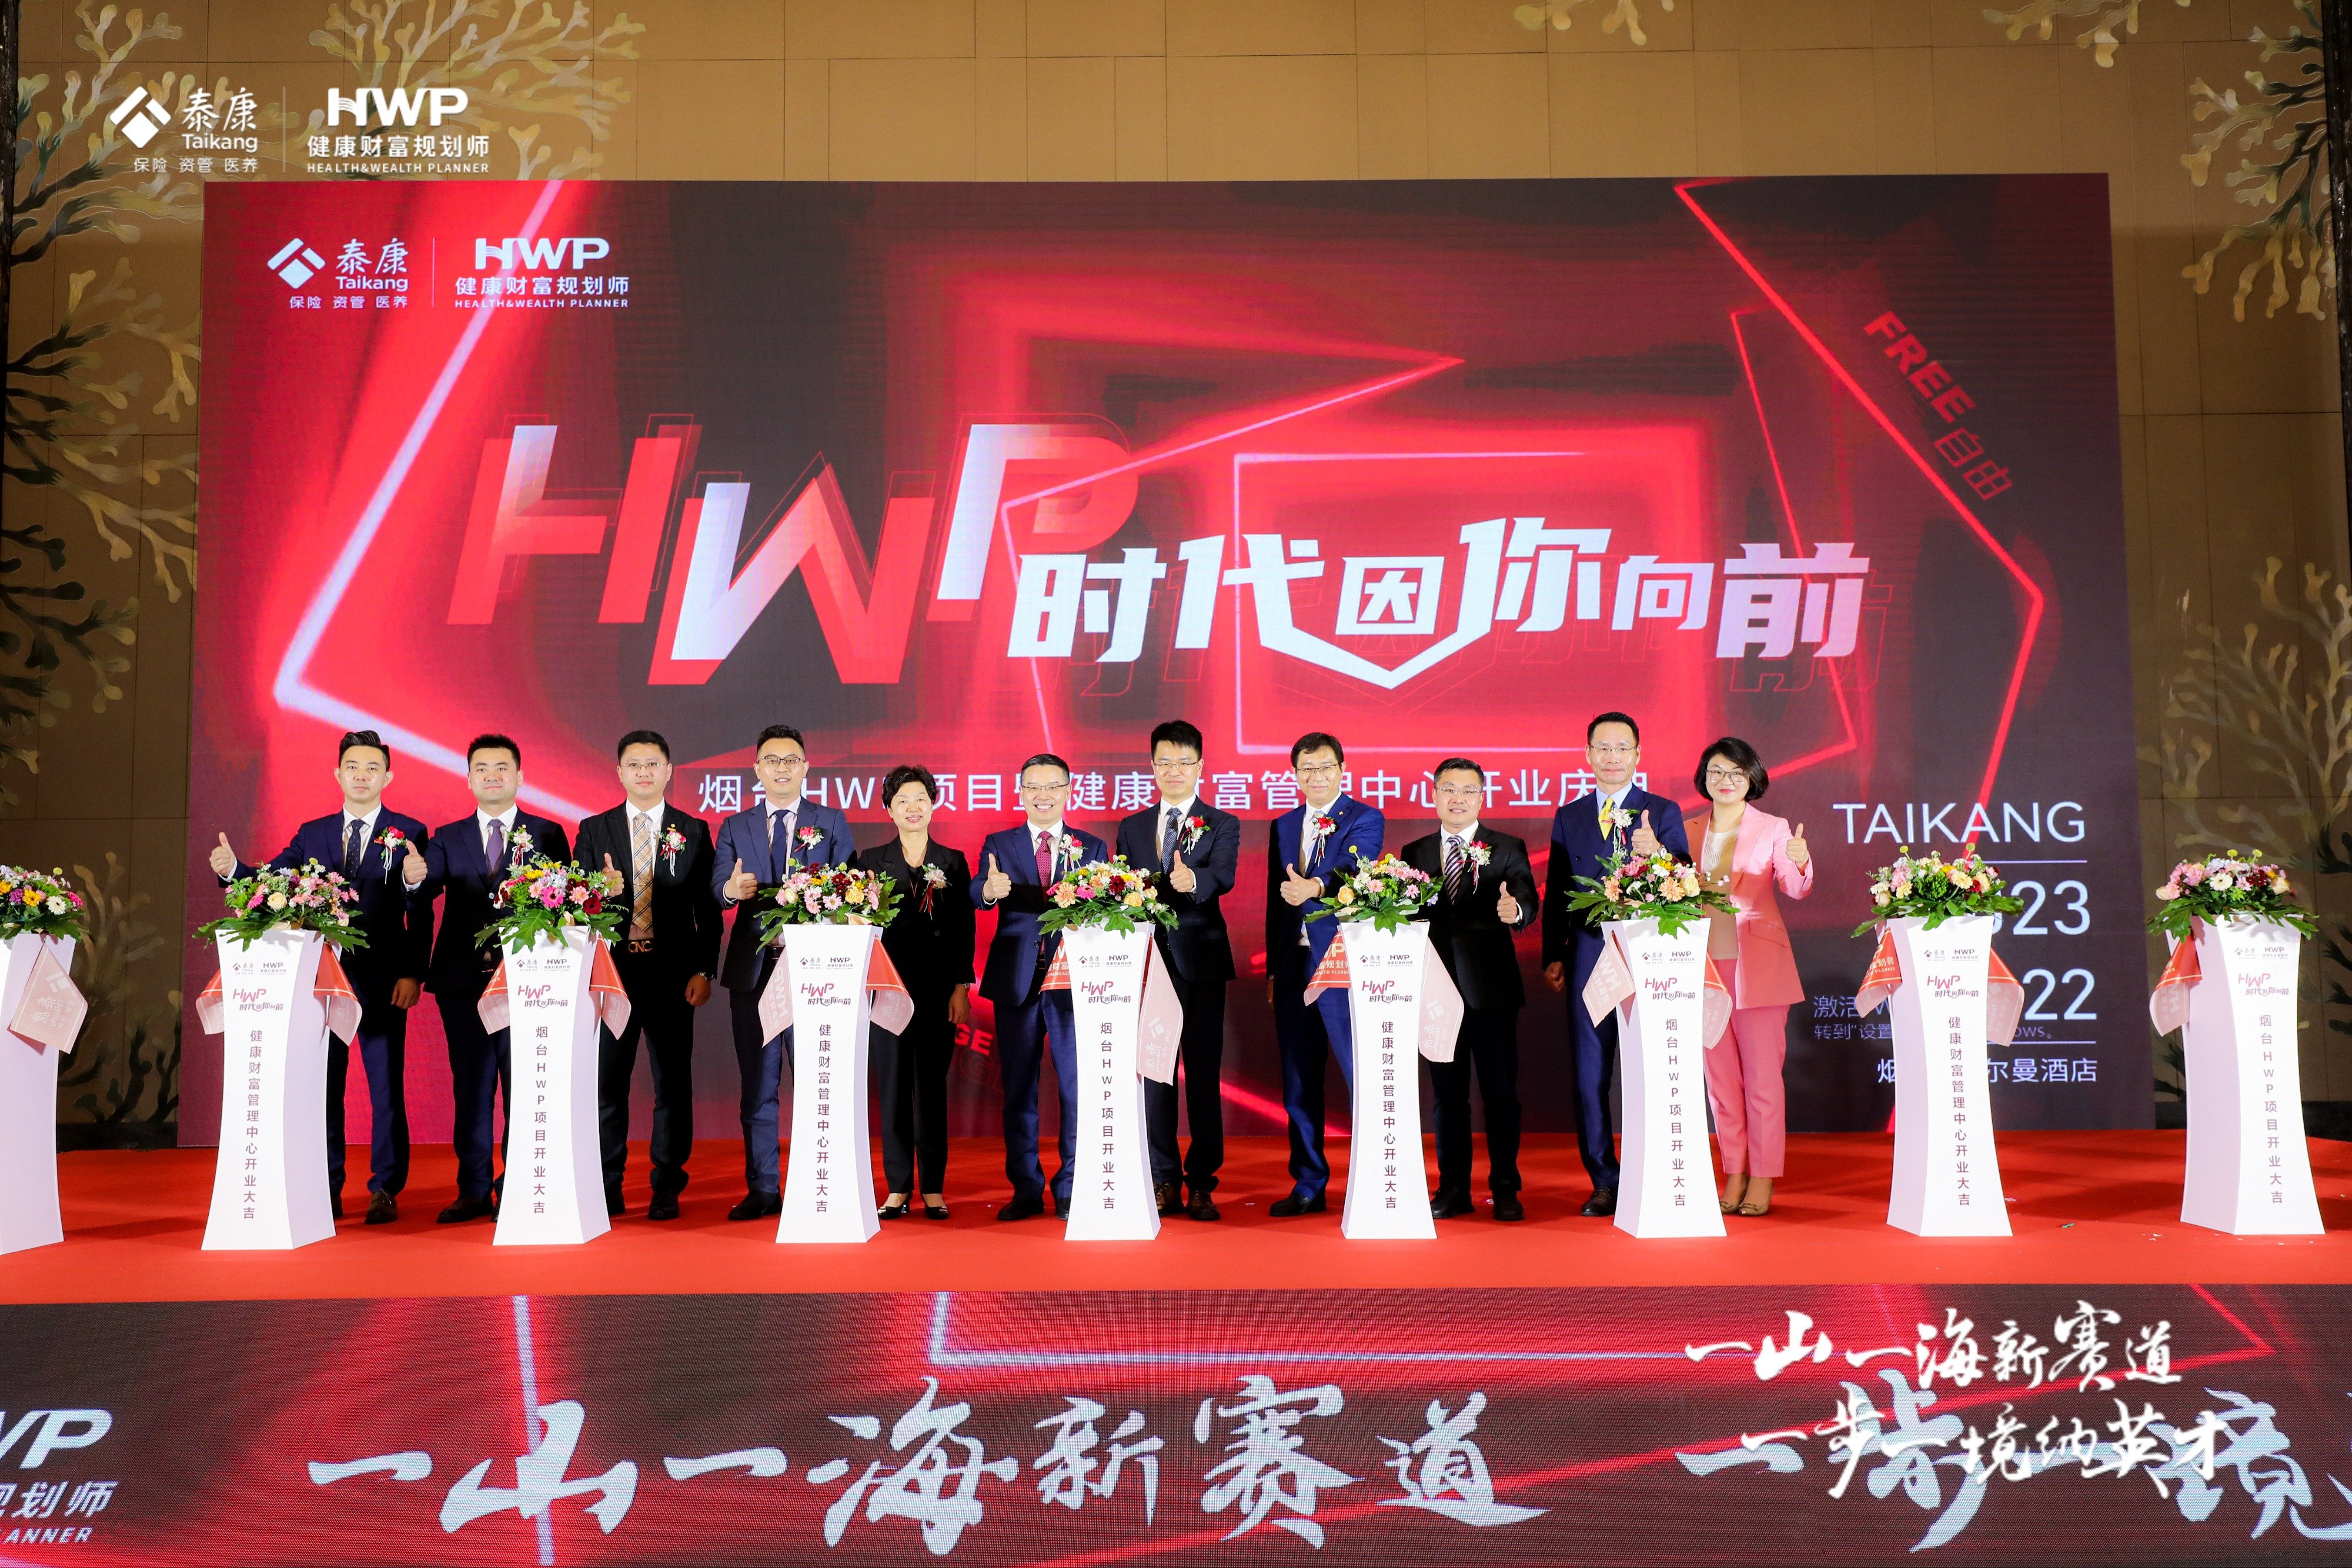 新赛道 新机遇 泰康人寿山东分公司22周年HWP跨越发展